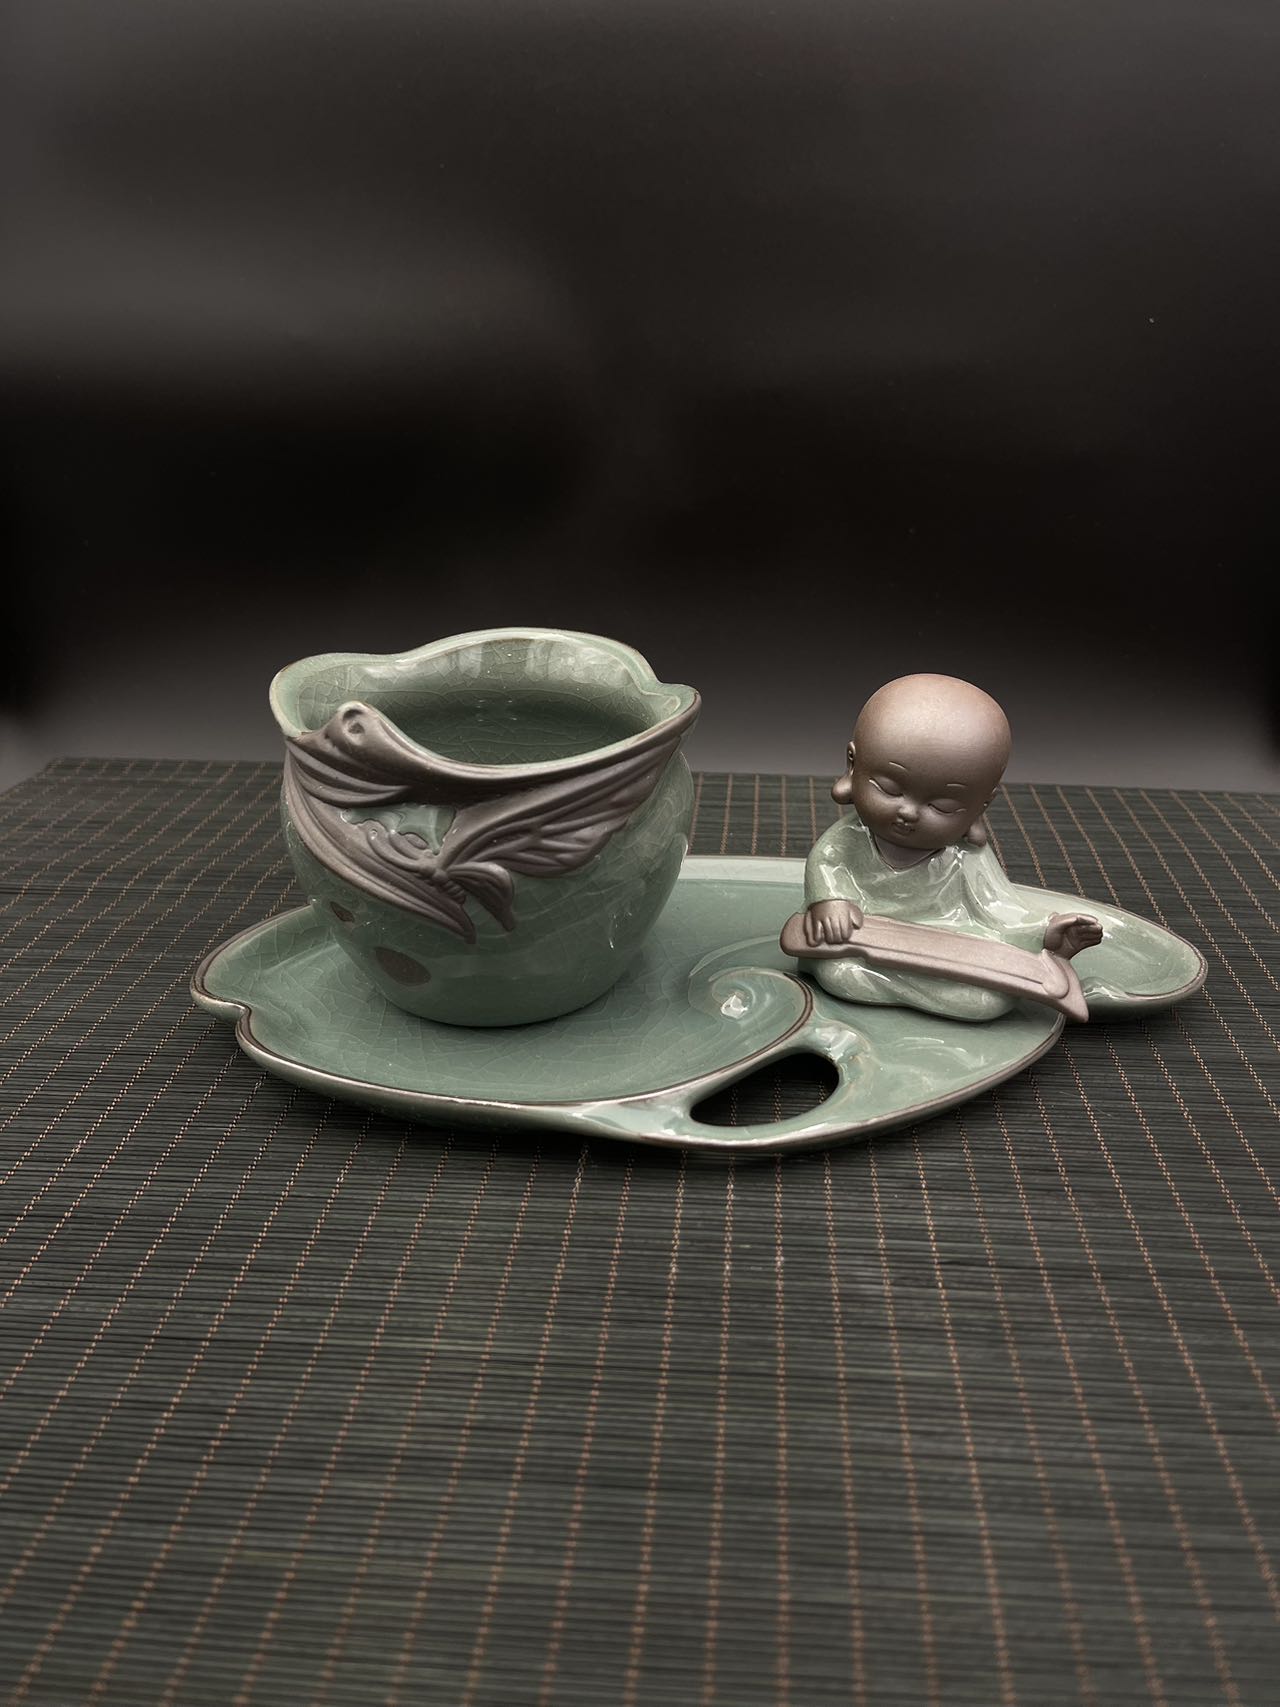 Small Ceramic Glazed Flower Pot with Tray and Buddha Figurine